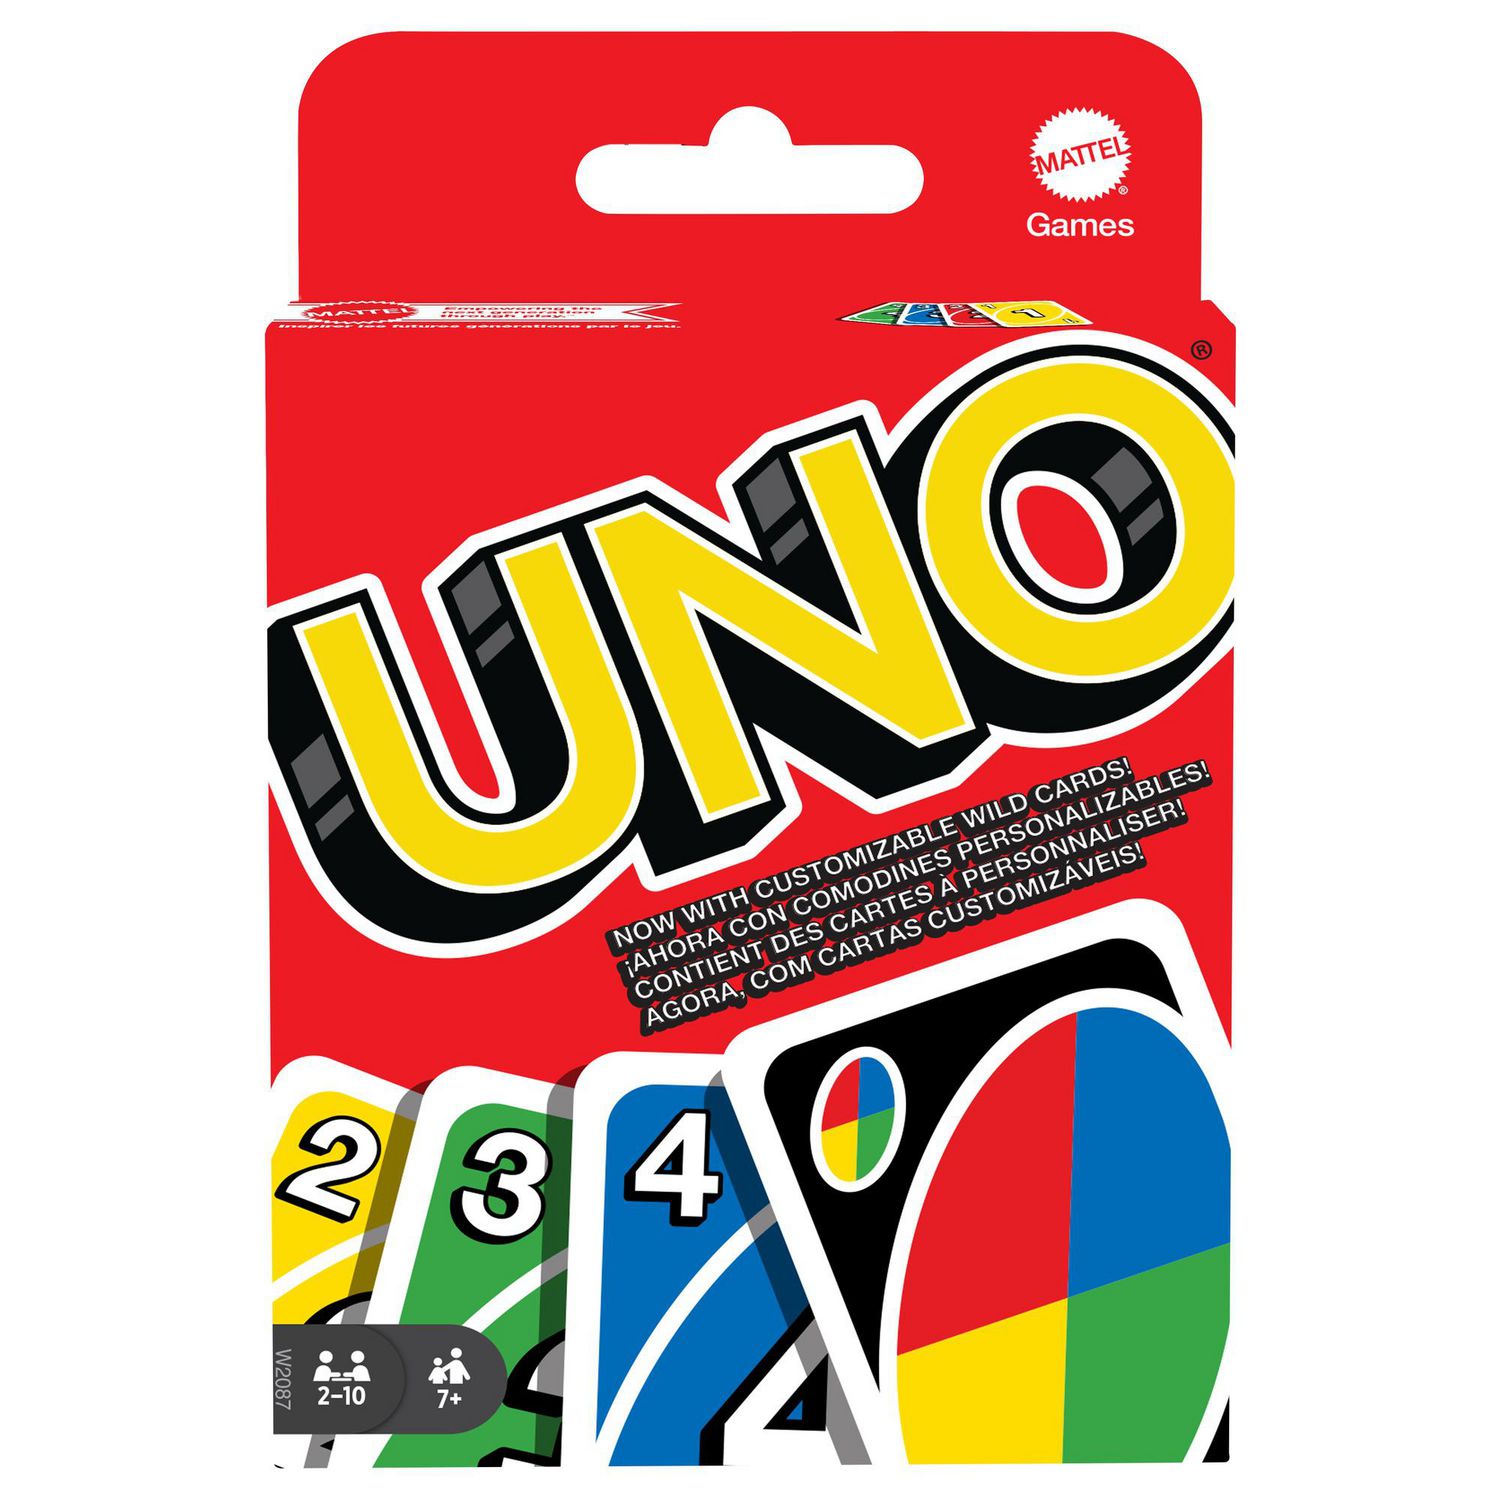 Uno Extreme - Jeux et jouets Mattel - Avenue des Jeux